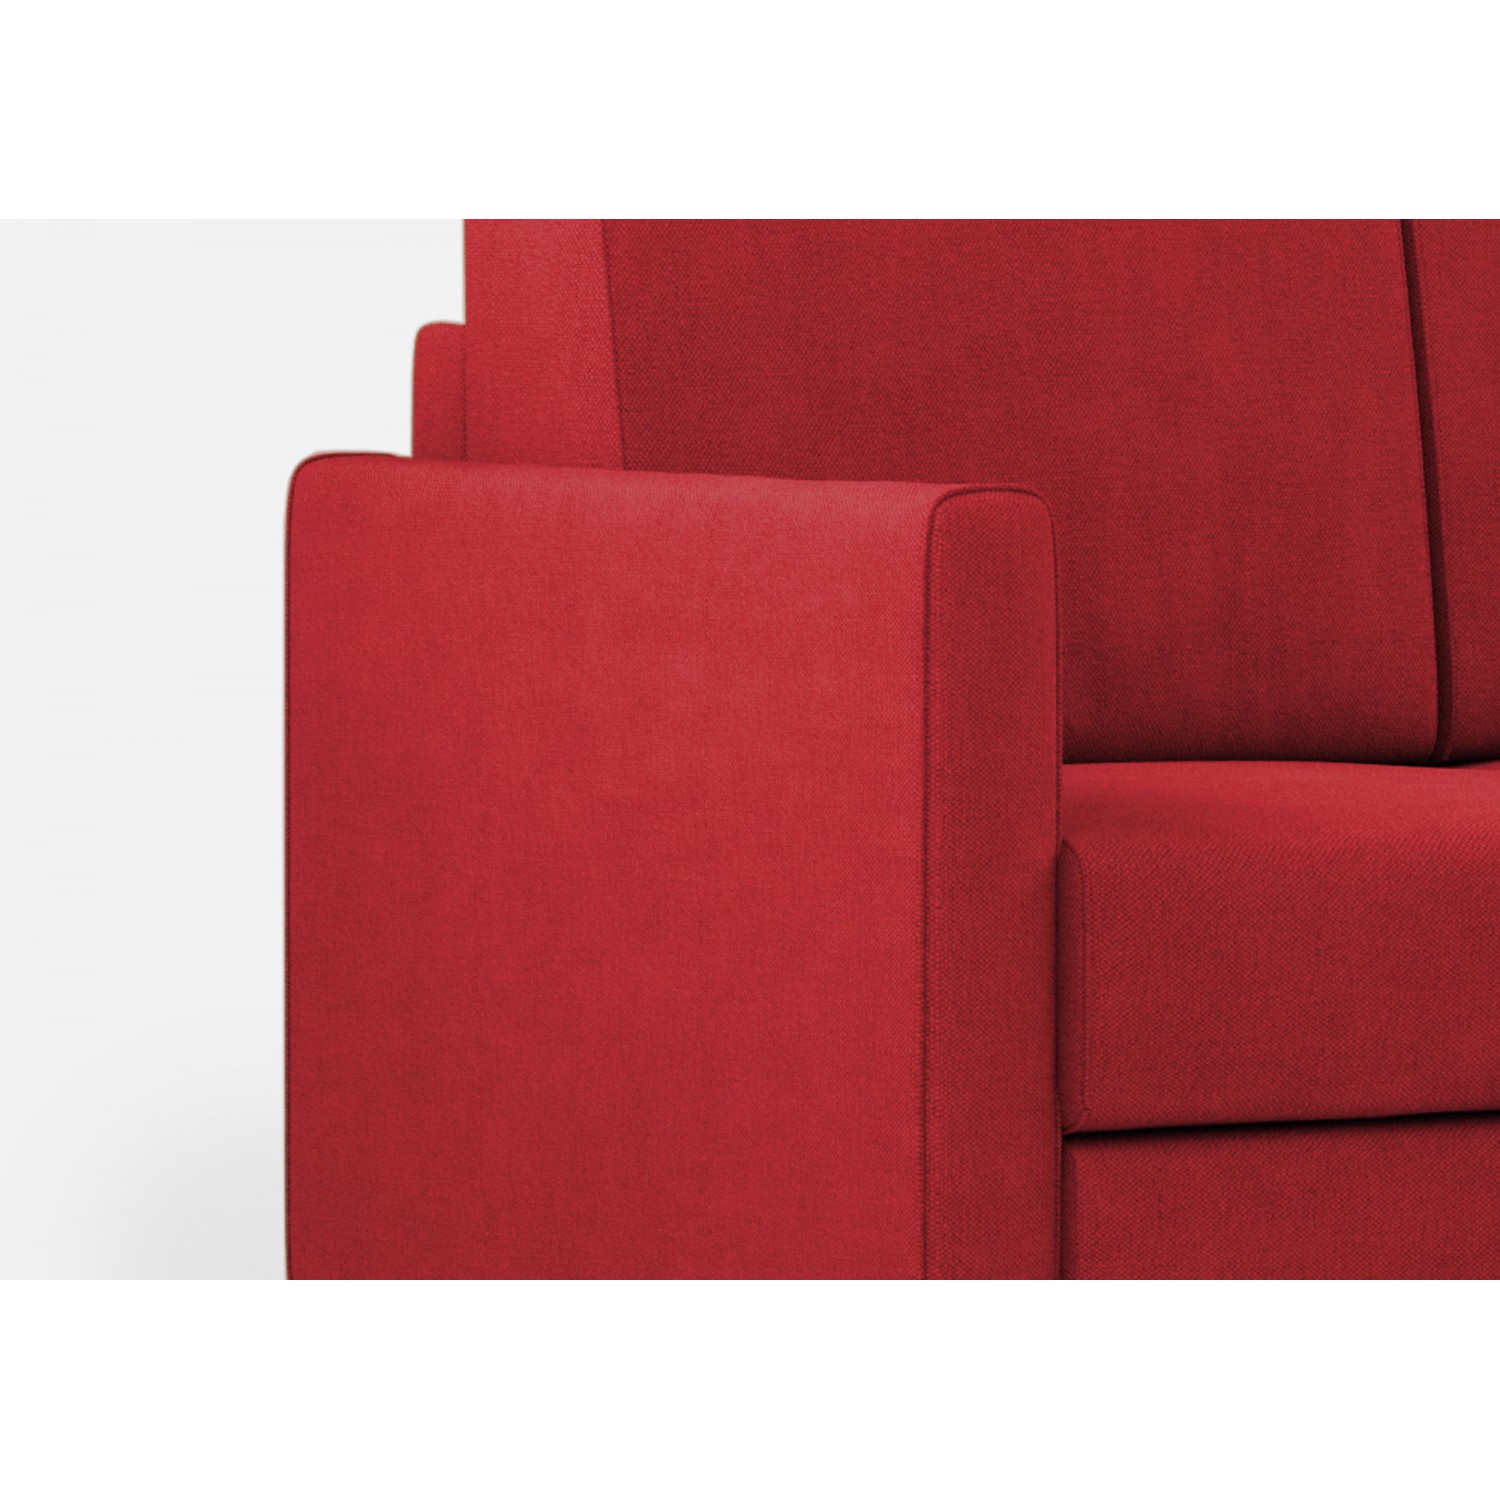 Ityhome Divano Karay 2 posti (due sedute da 60cm)+ angolo + divano 2 posti (due sedute da 60cm) misure esterne L.221x221 colore rosso